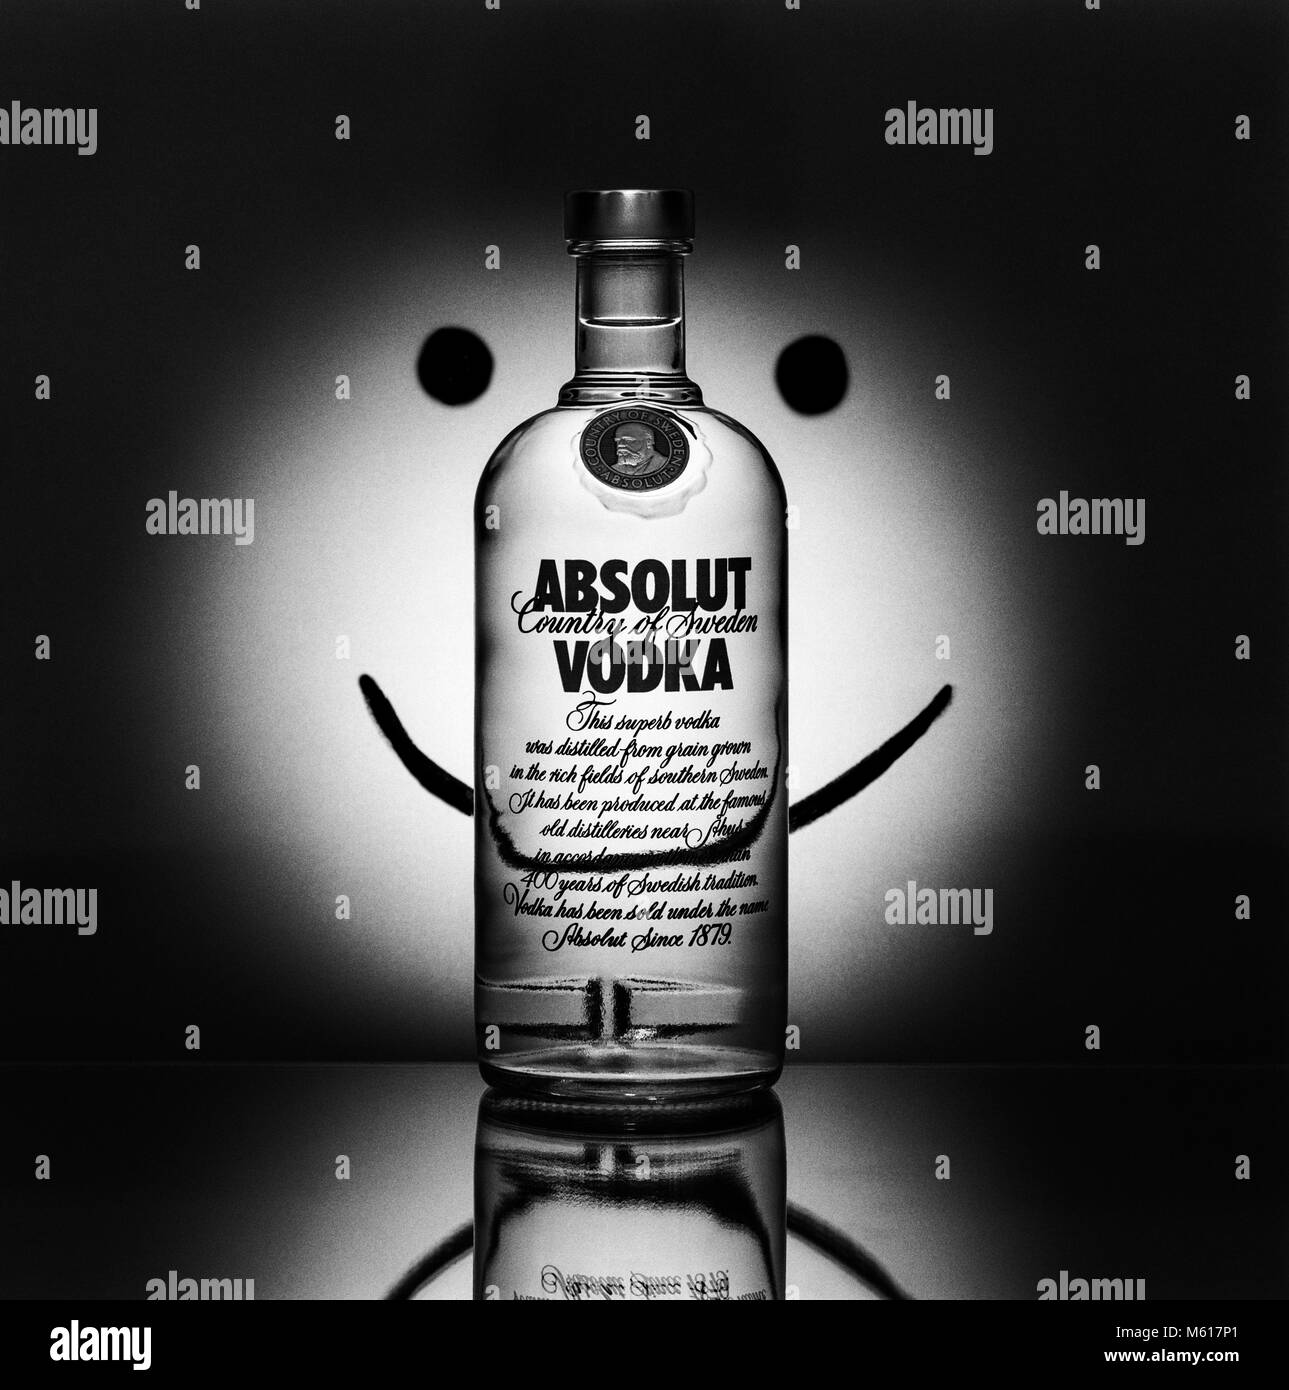 Absolut Vodka bottiglia fotografata nello stile dell'Absolut annunci, Absolut smiley, 22 maggio 1992 Foto Stock